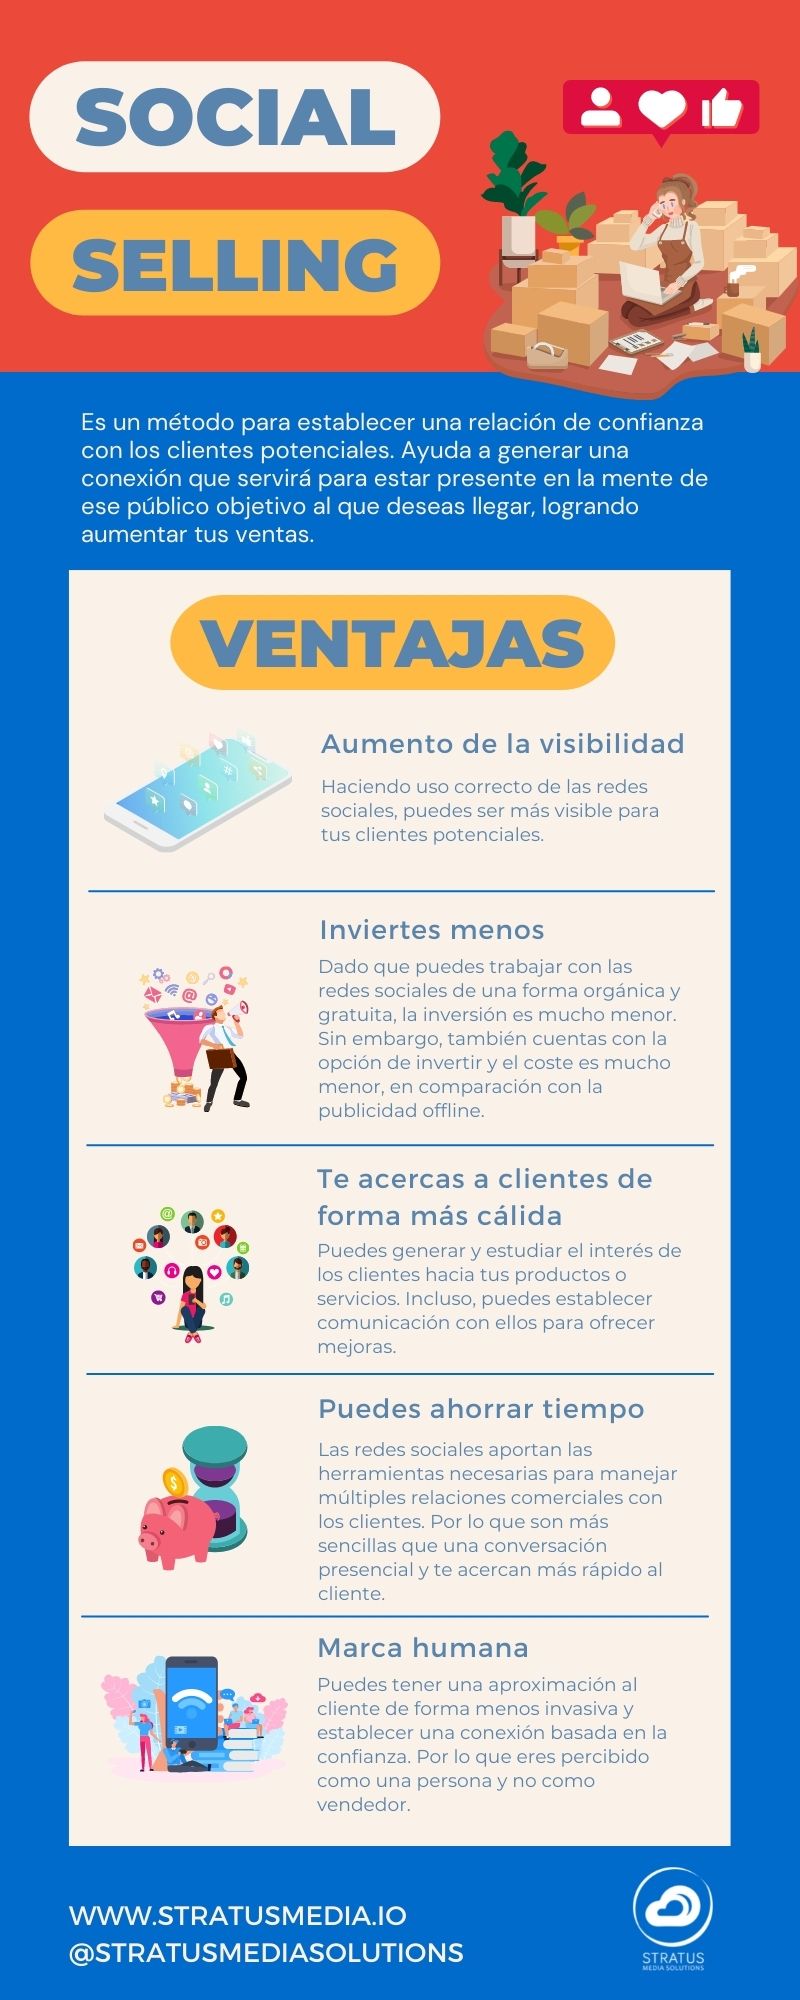 Social selling ventajas infografía